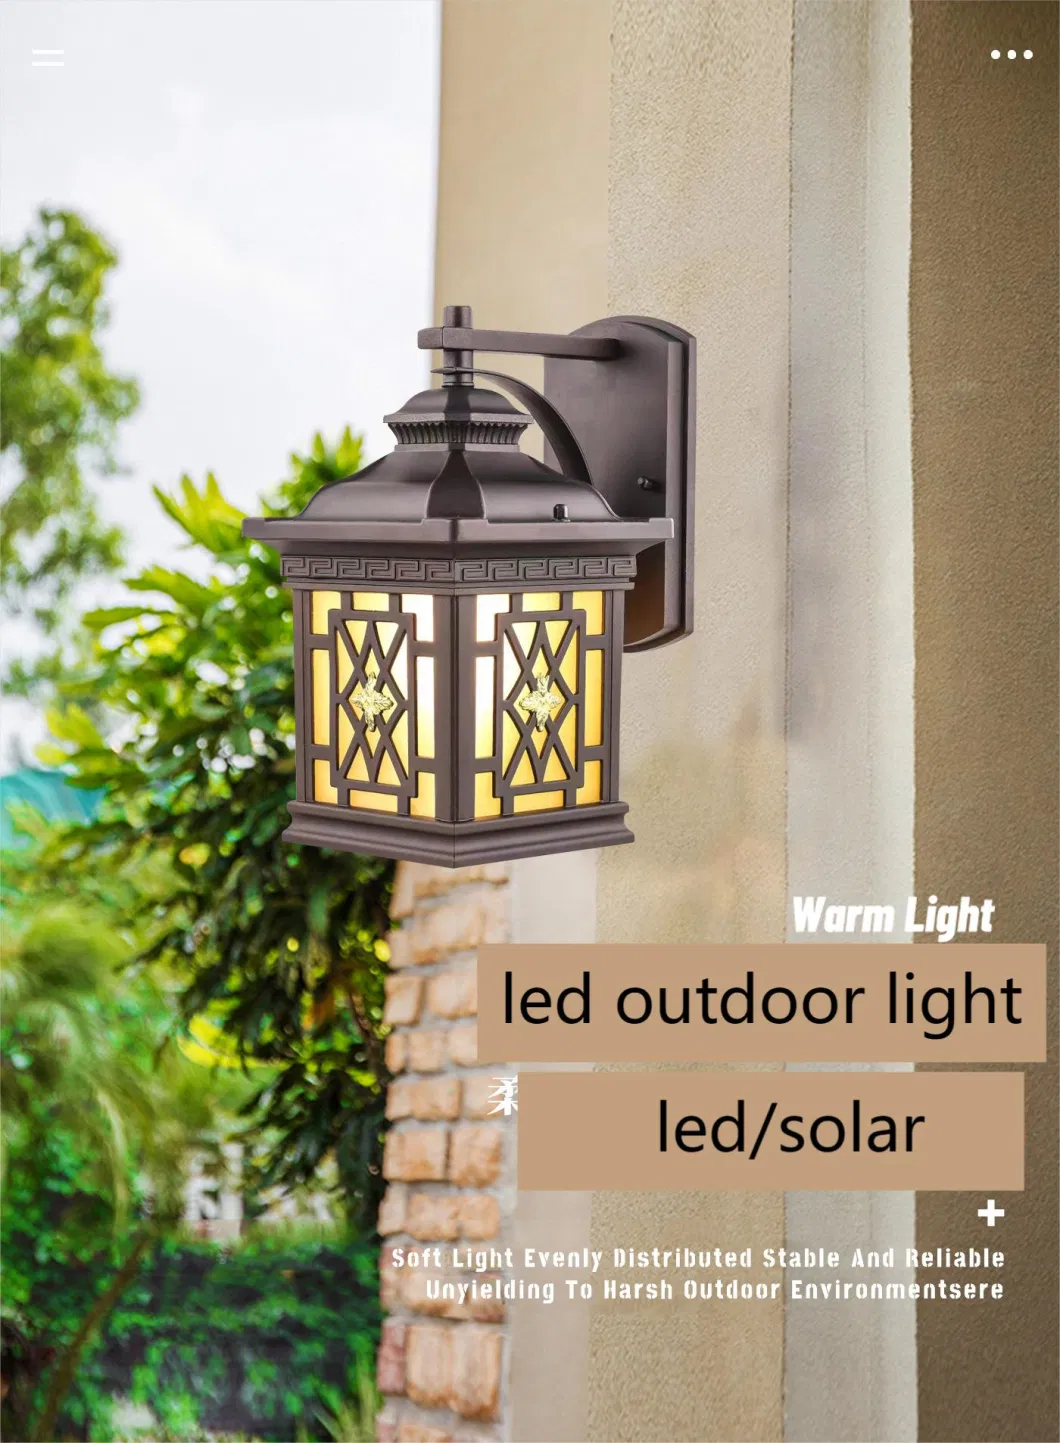 Retro-Elegant LED Outdoor Wall Lamp Garden Light for Terrace Balcony